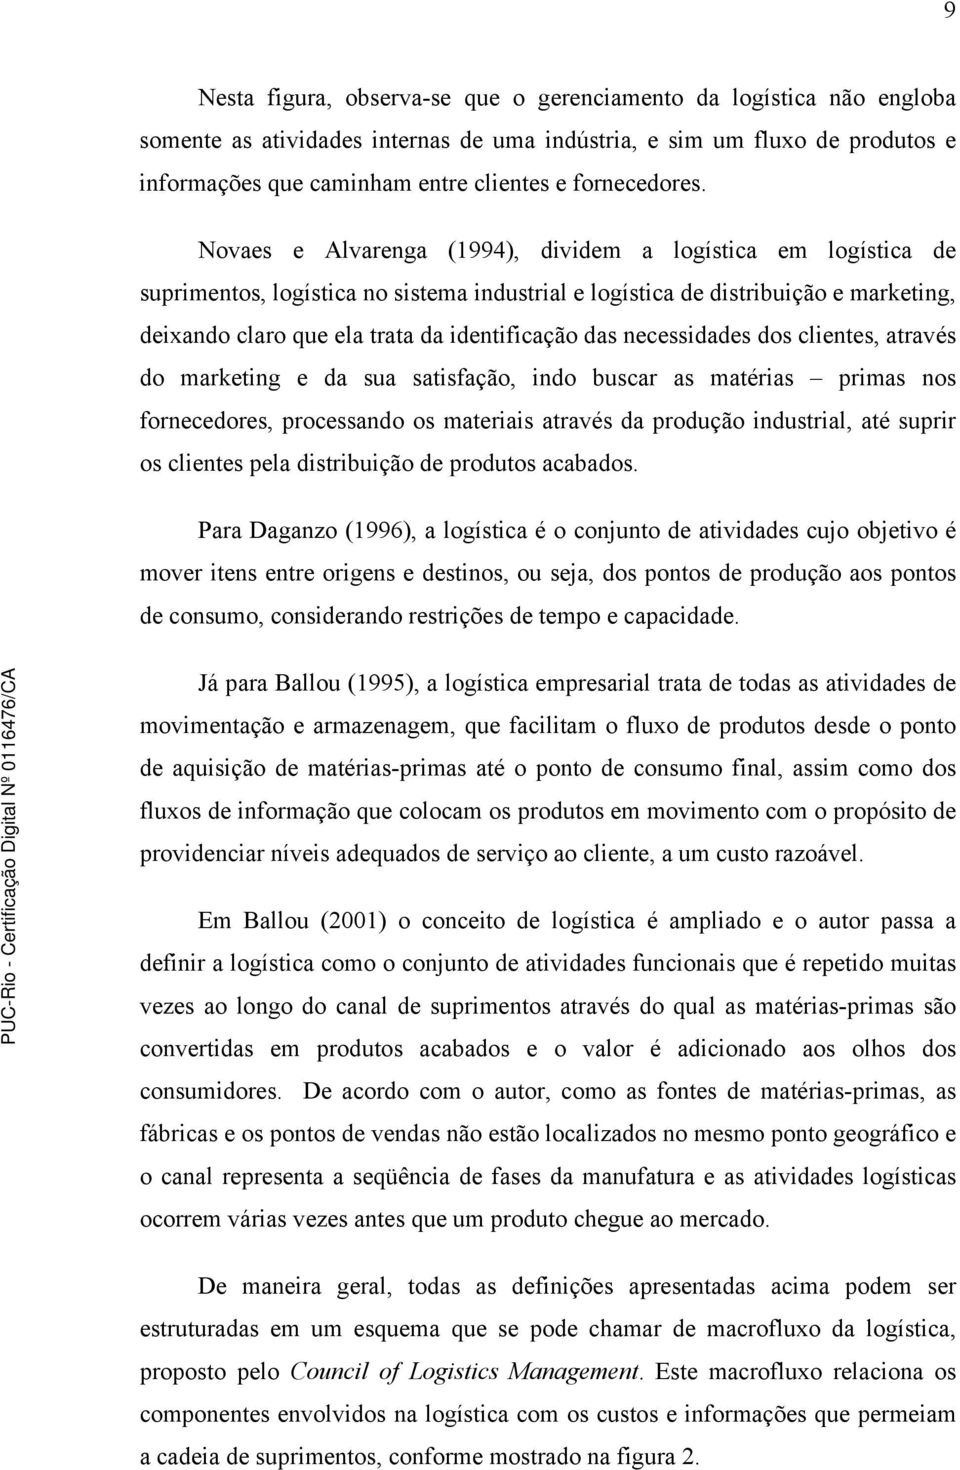 Novaes e Alvarenga (1994), dividem a logística em logística de suprimentos, logística no sistema industrial e logística de distribuição e marketing, deixando claro que ela trata da identificação das